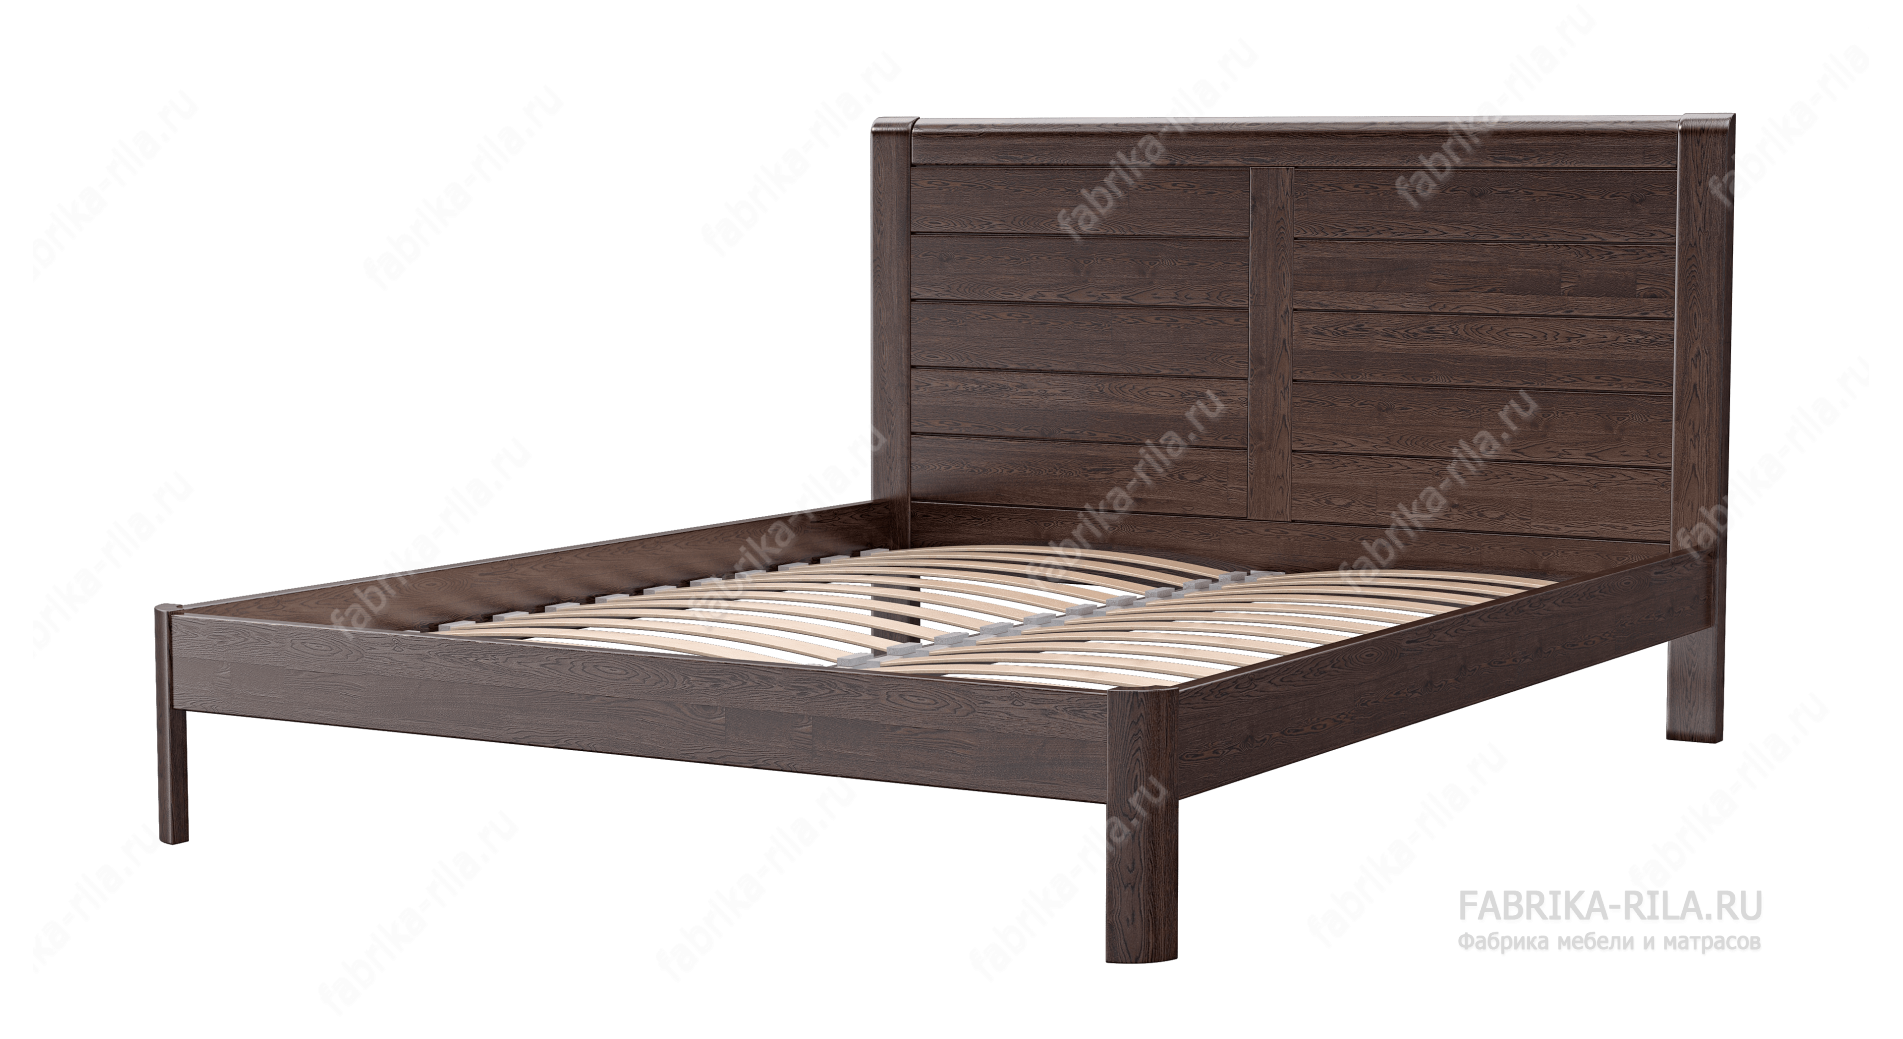 Кровать Riviera — 180x200 см. из сосны